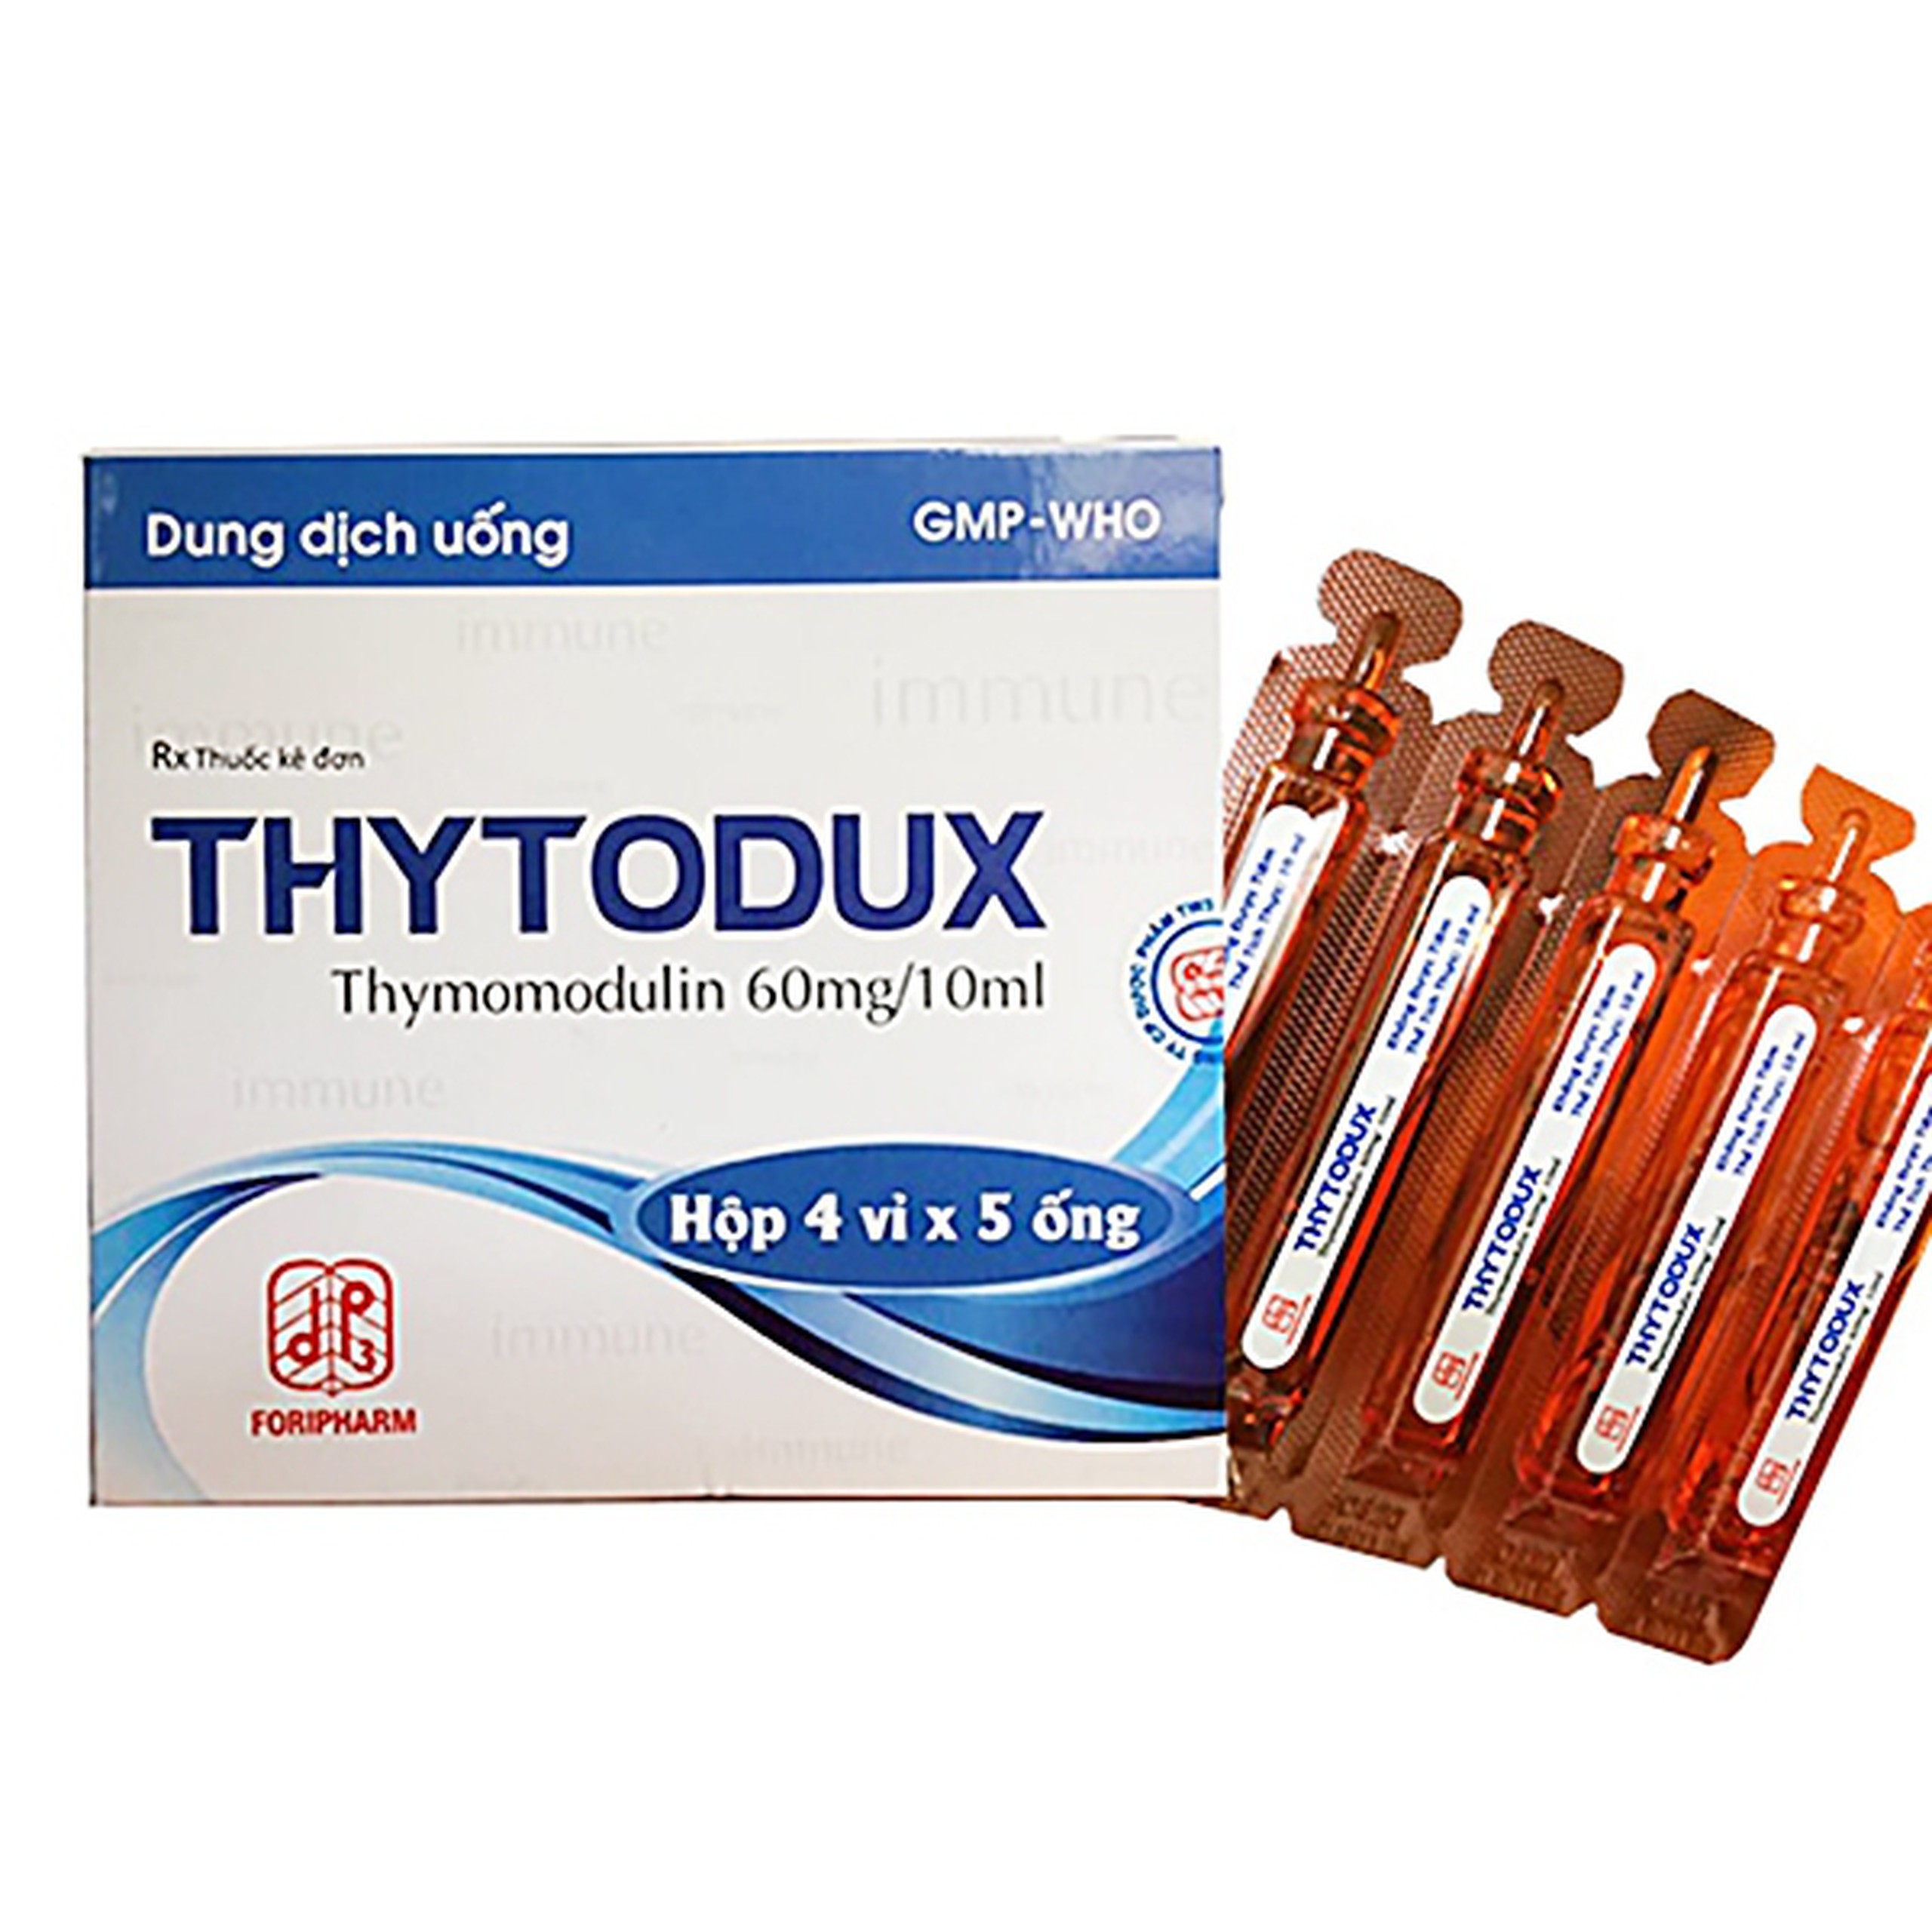 Dung dịch Thytodux hỗ trợ dự phòng tái phát nhiễm khuẩn hô hấp (4 vỉ x 5 ống)